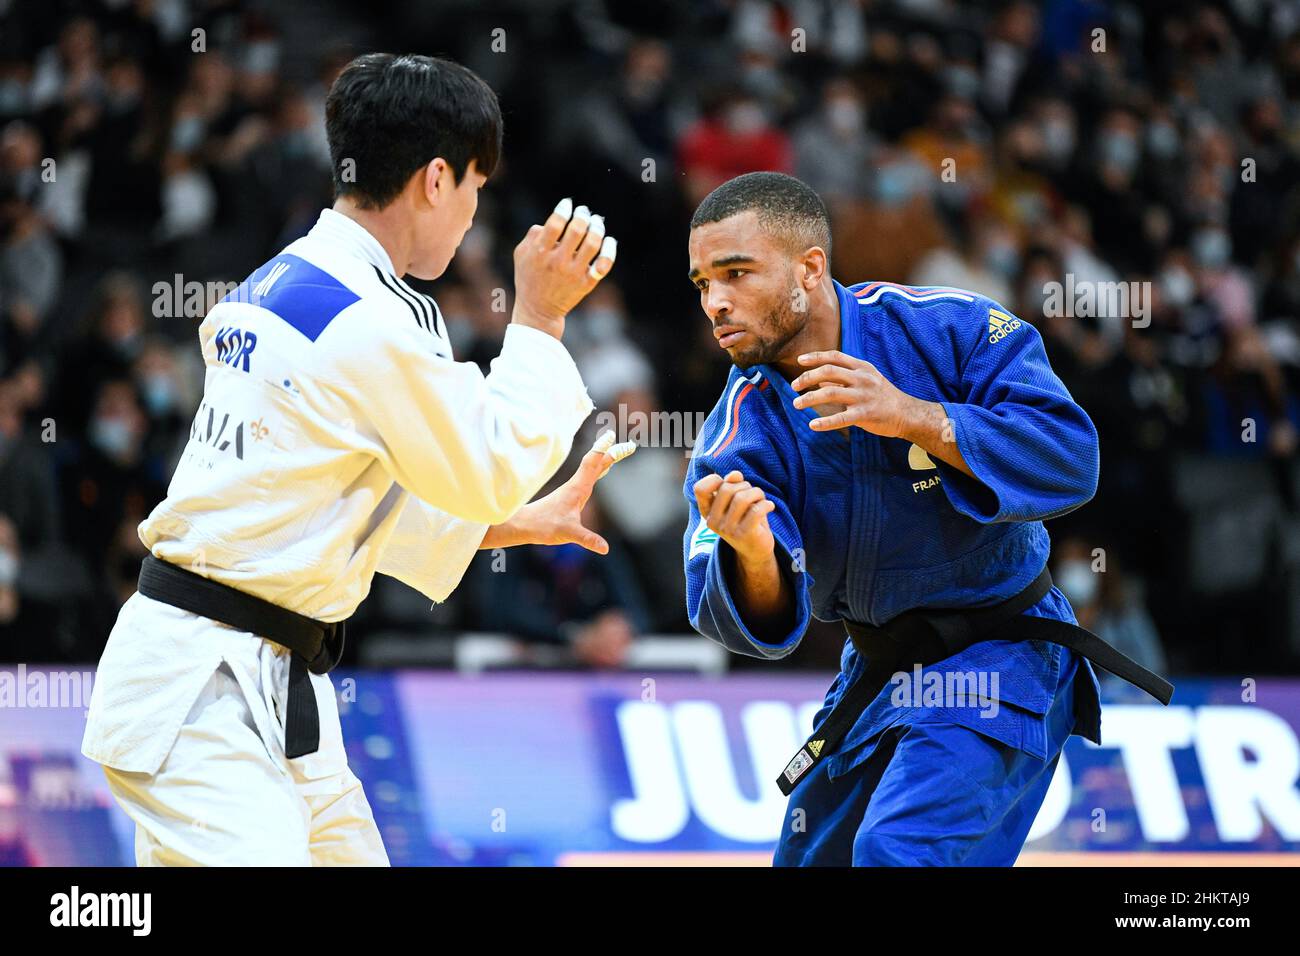 Daikii Bouba, ein -66 kg schwerer Mann, tritt während des Paris Grand Slam 2022, IJF World Judo Tour am 5. Februar 2022 in der Accor Arena in Paris, Frankreich, an - Foto Victor Joly / DPPI Stockfoto